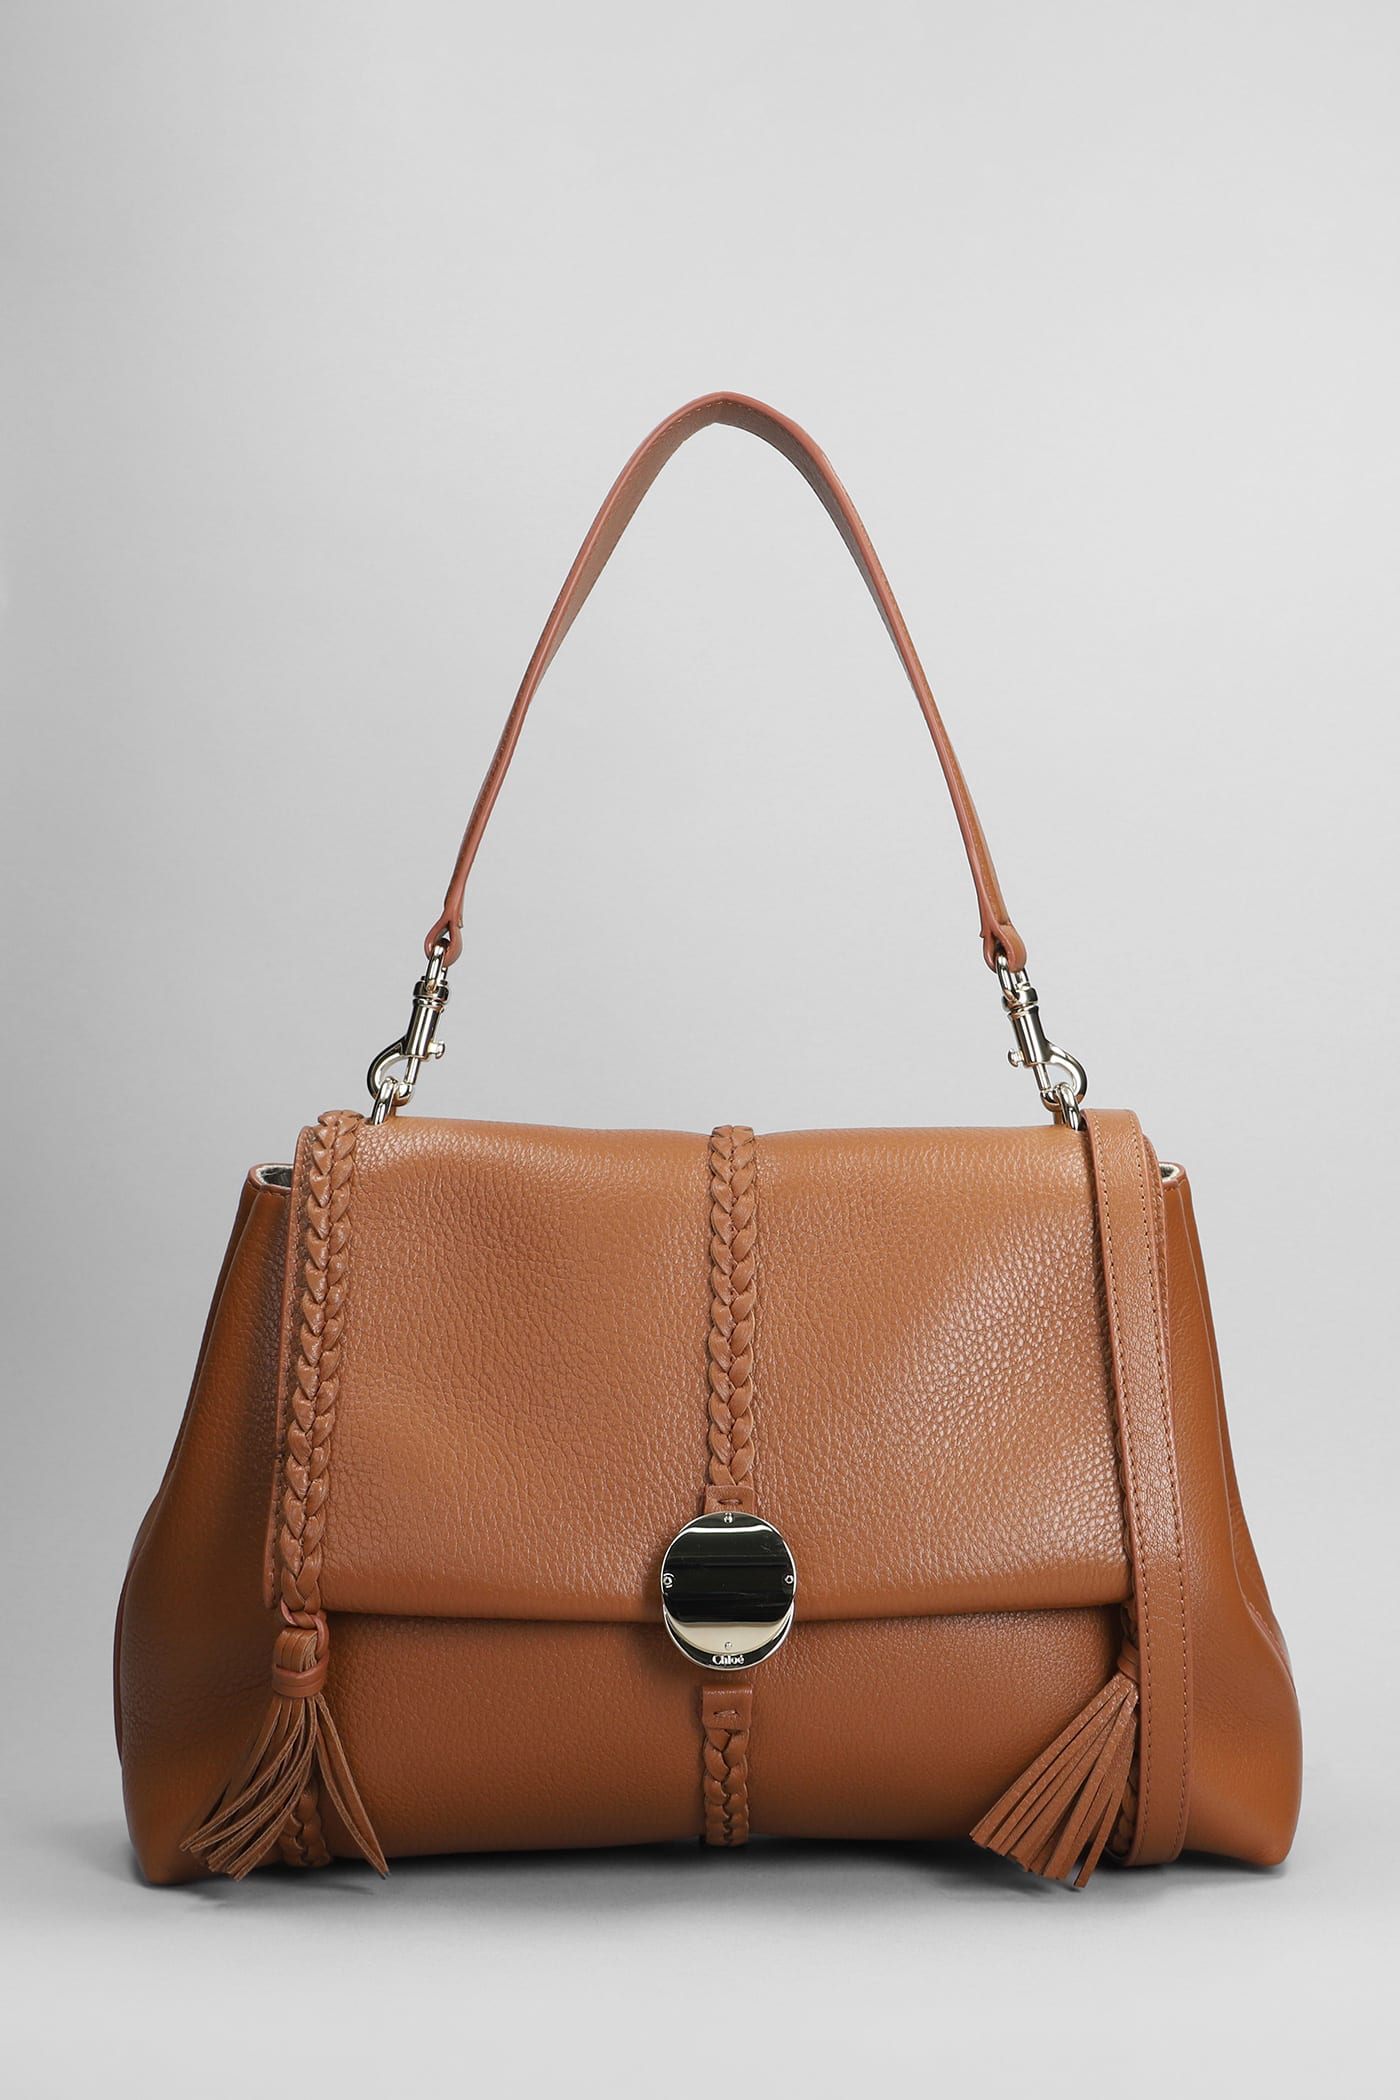 Chloé Penelope Shoulder Bag In Leather Color Leather